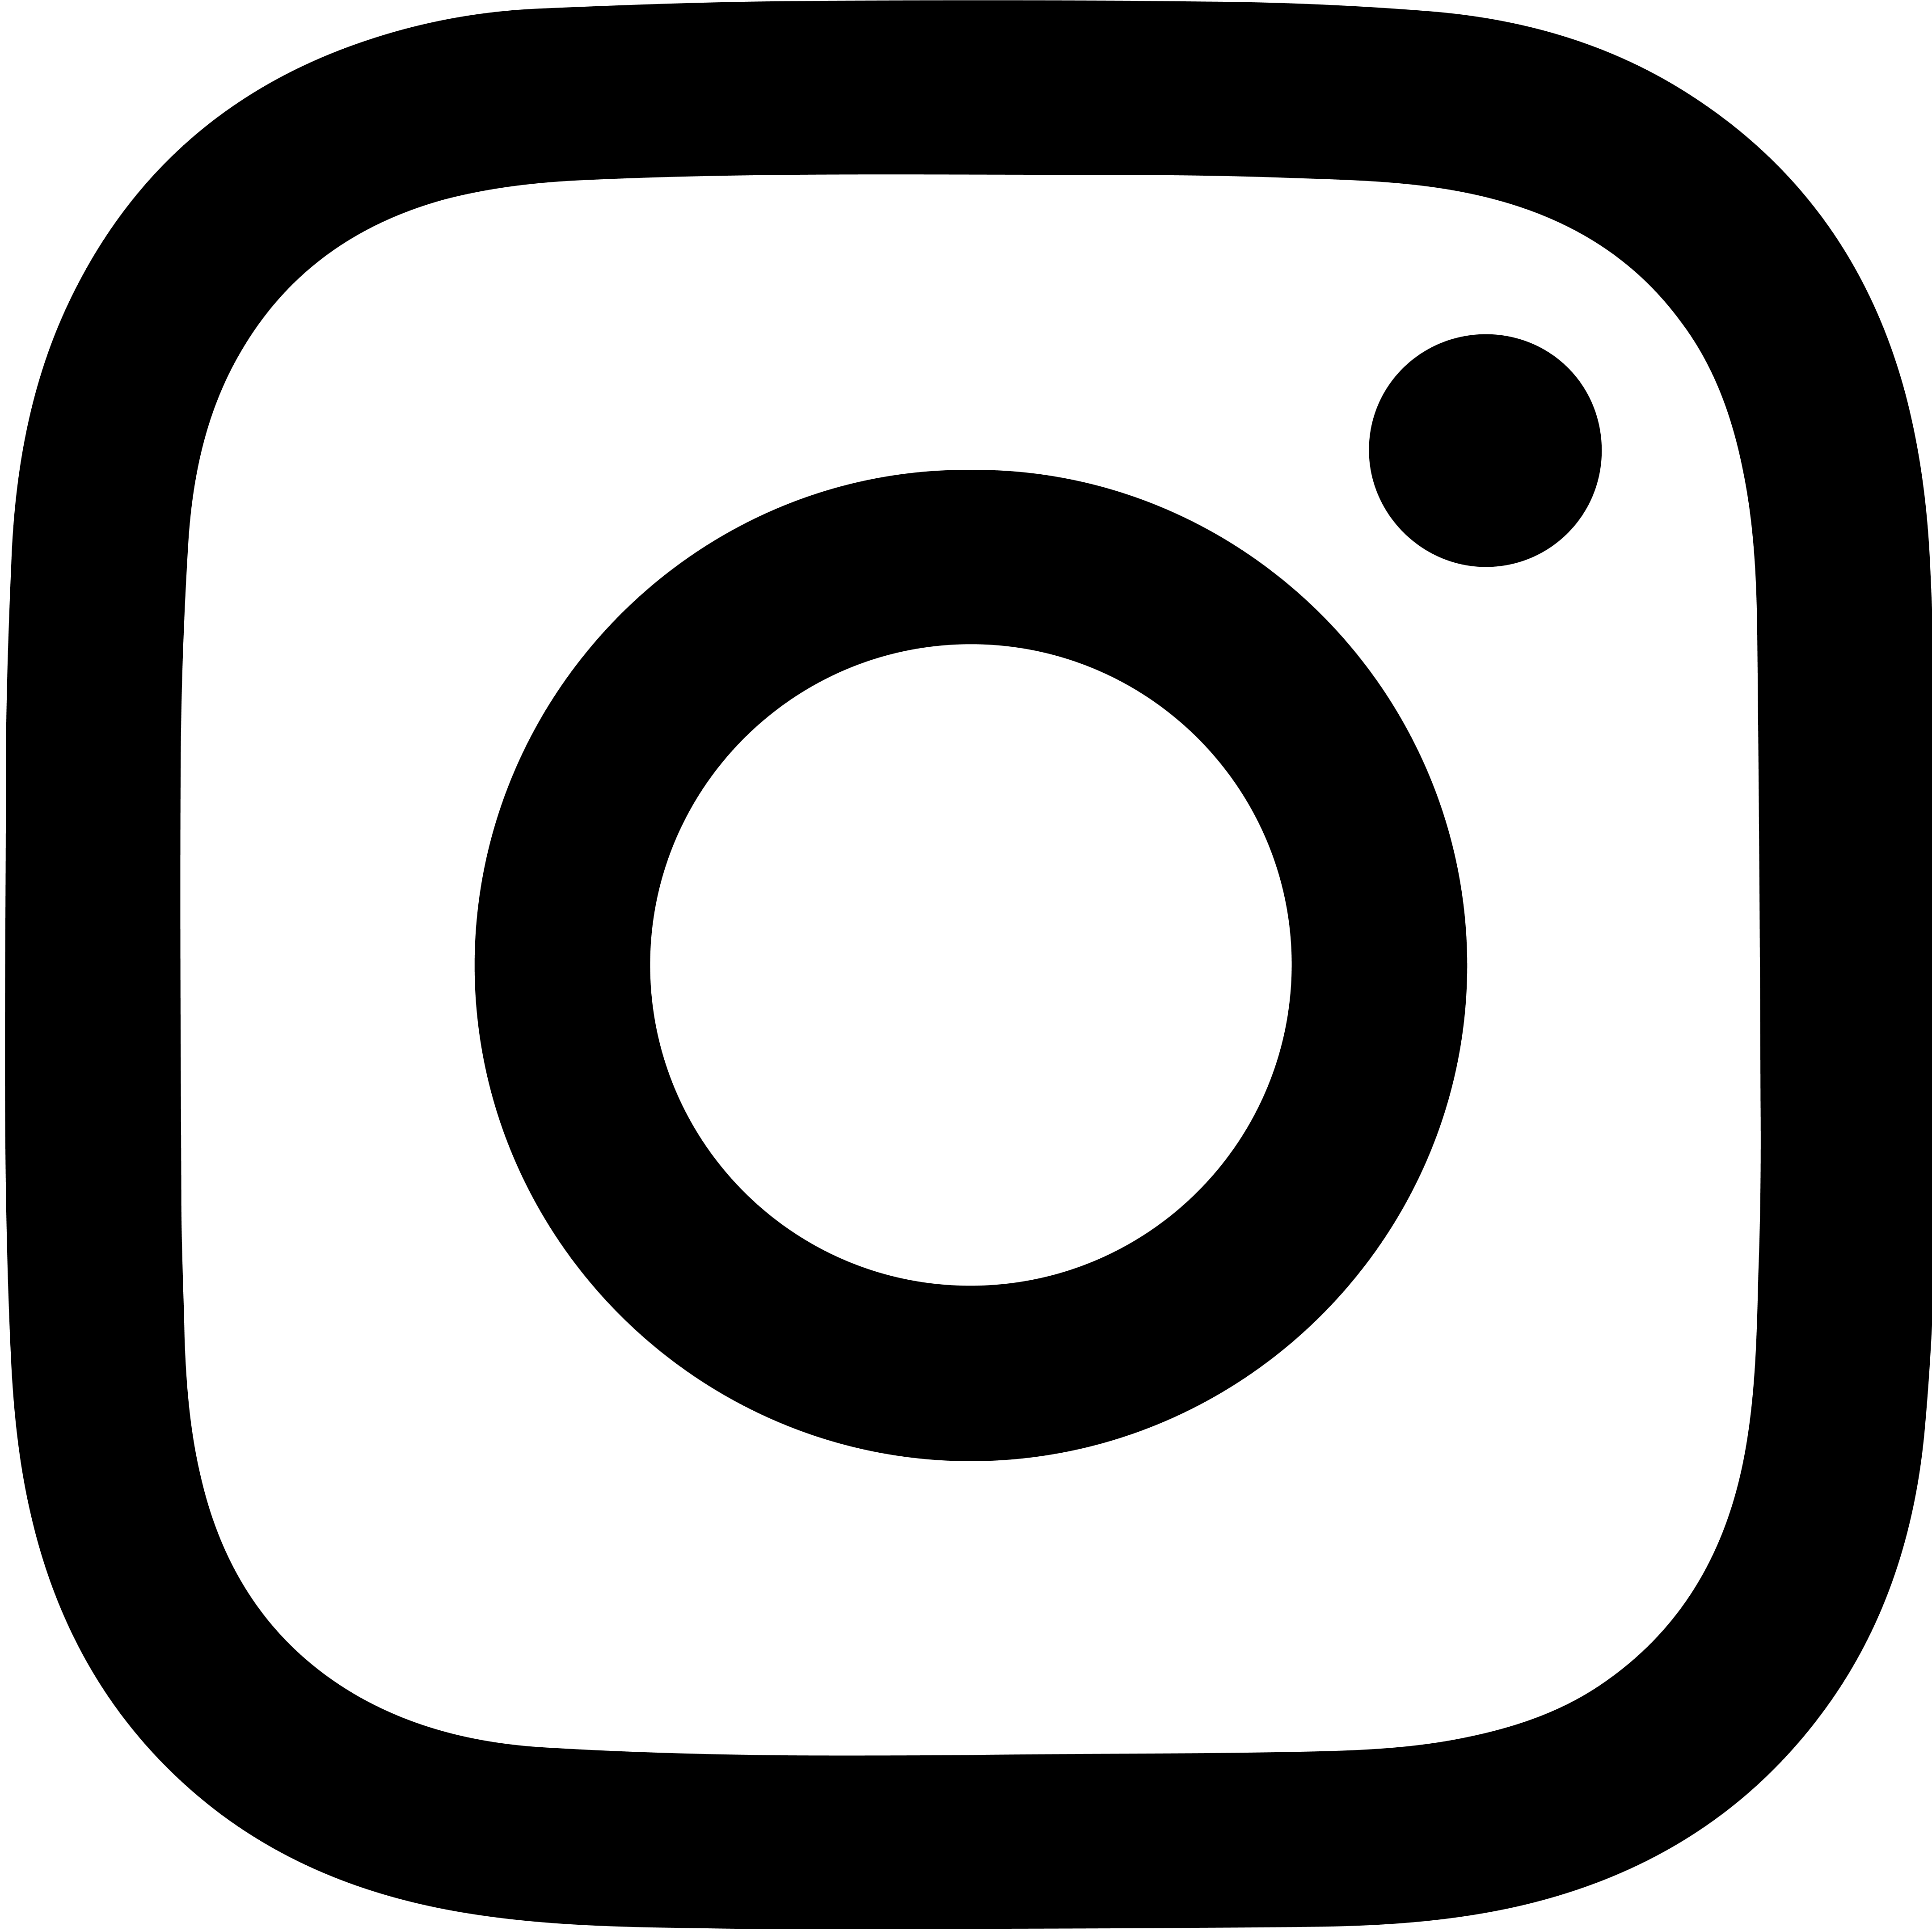 Follow me @ Instagram